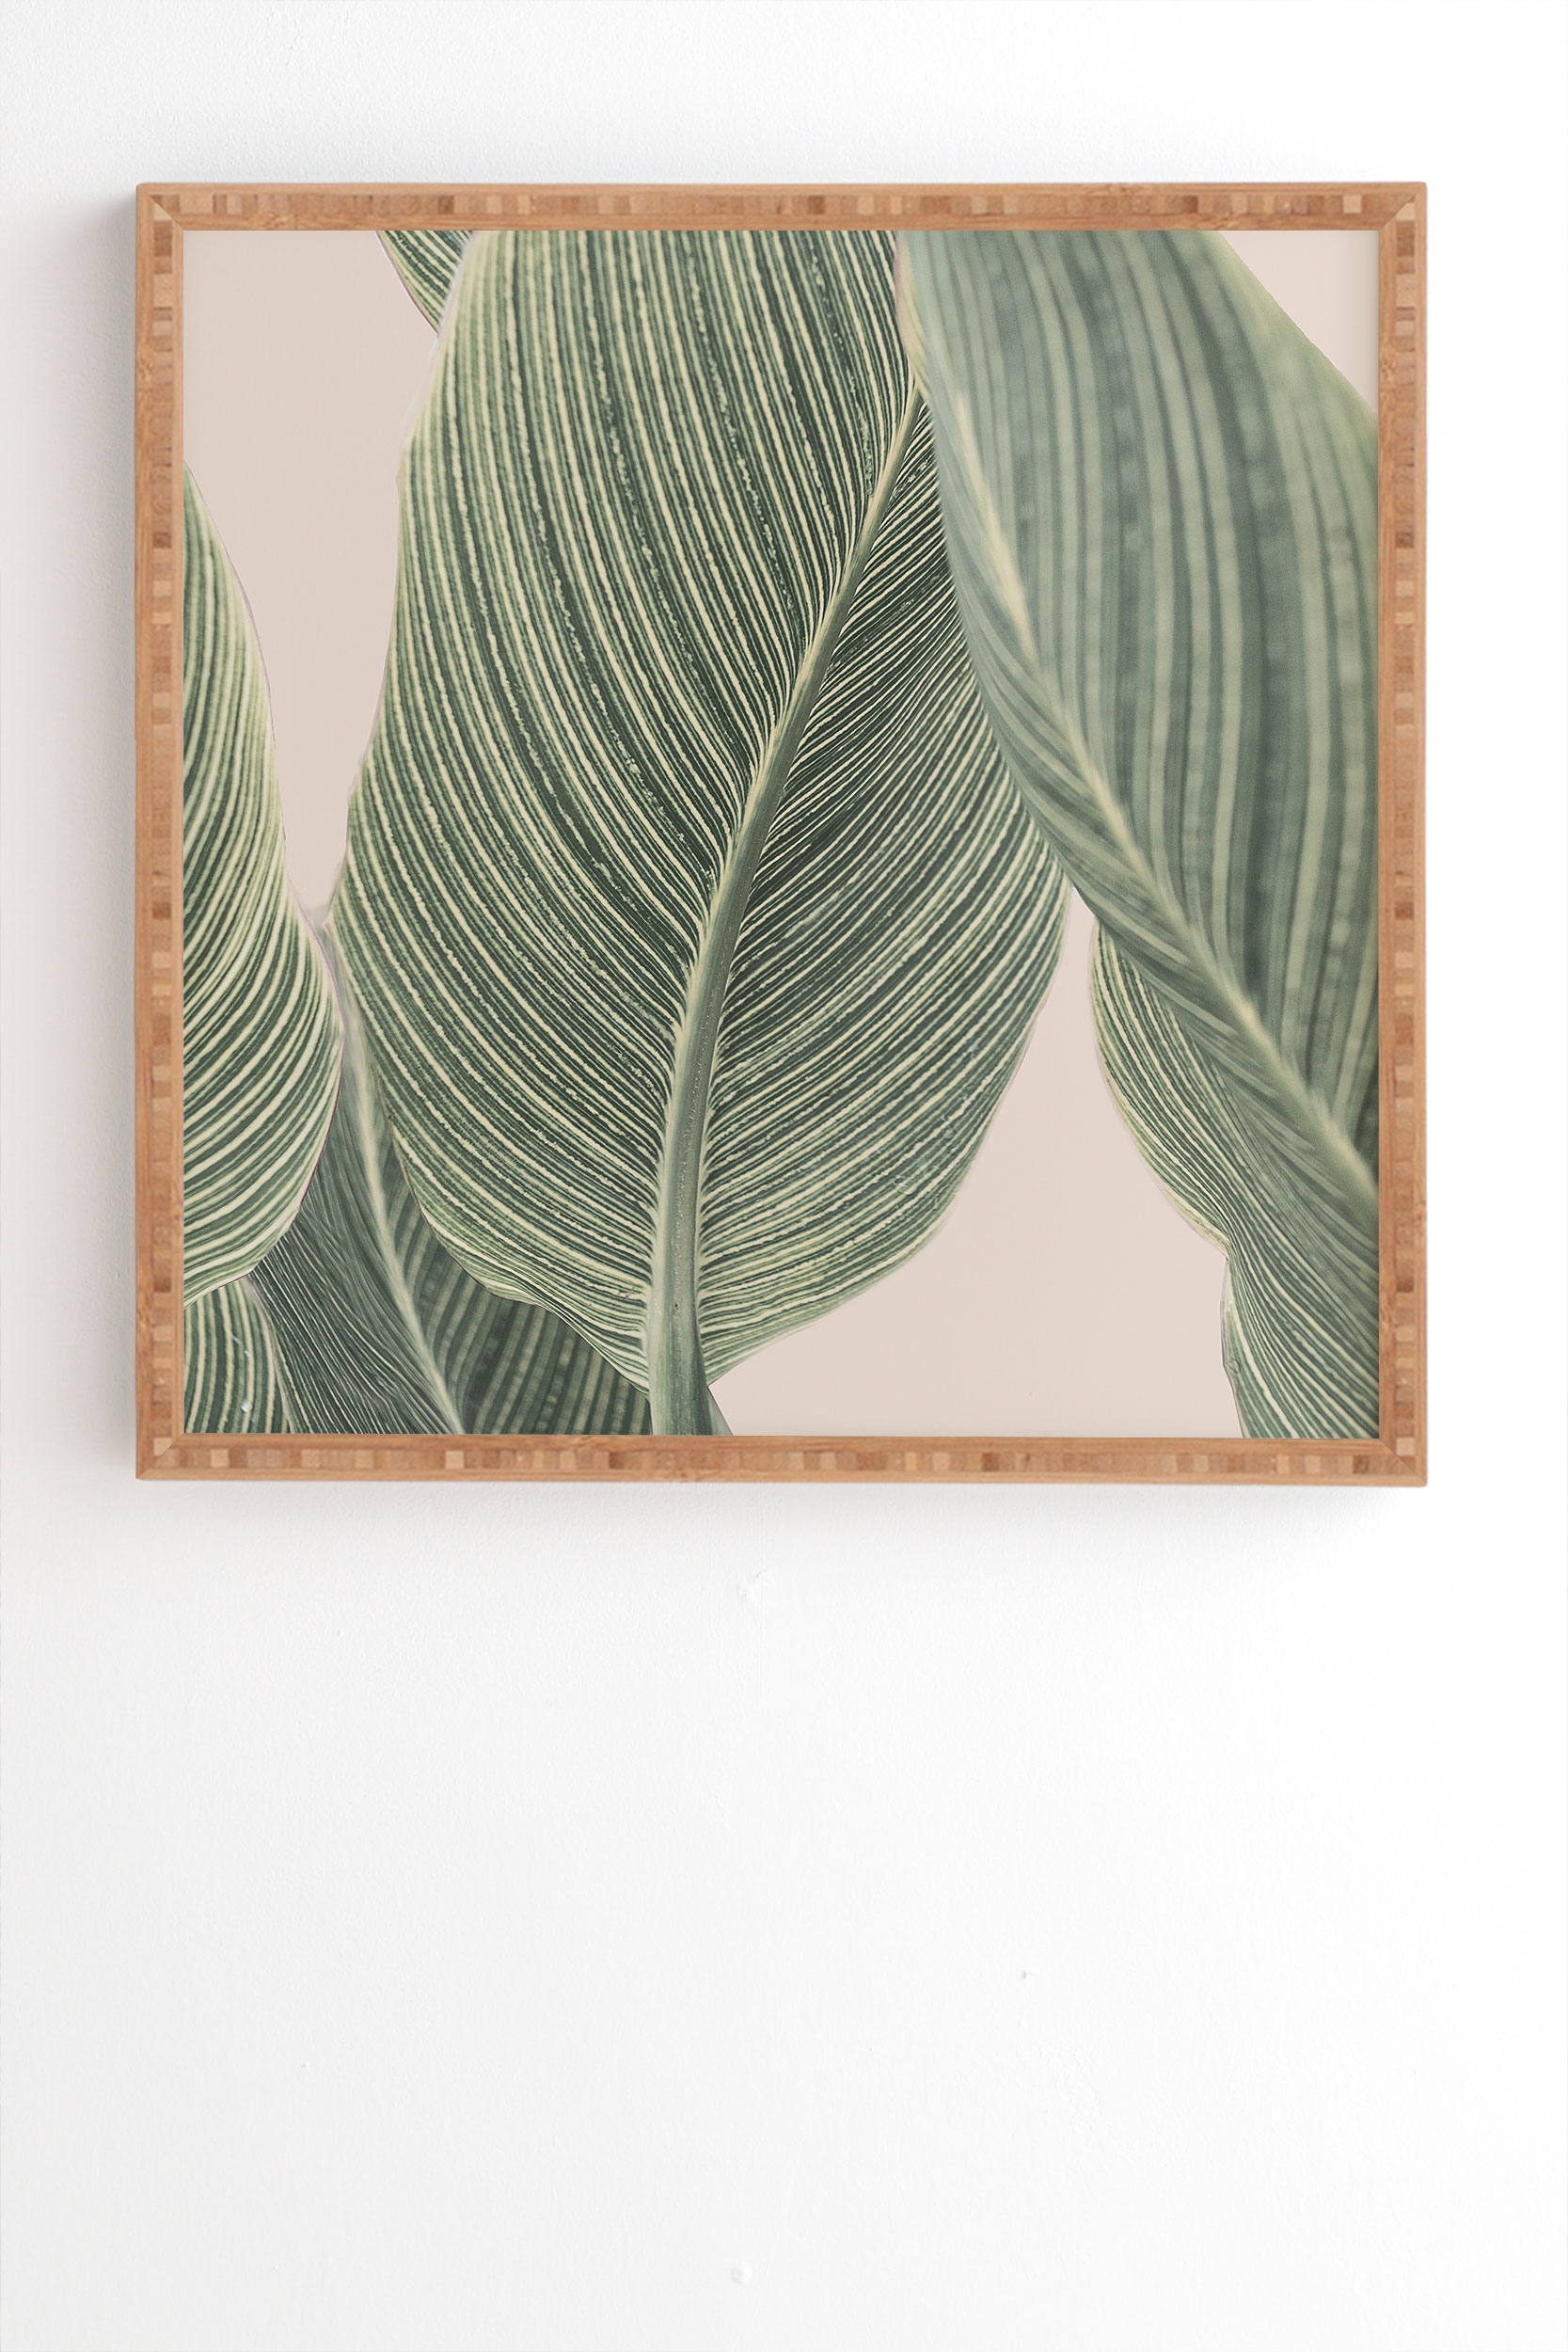 Calah by Sisi and Seb - Framed Wall Art Bamboo 20" x 20" - Image 1